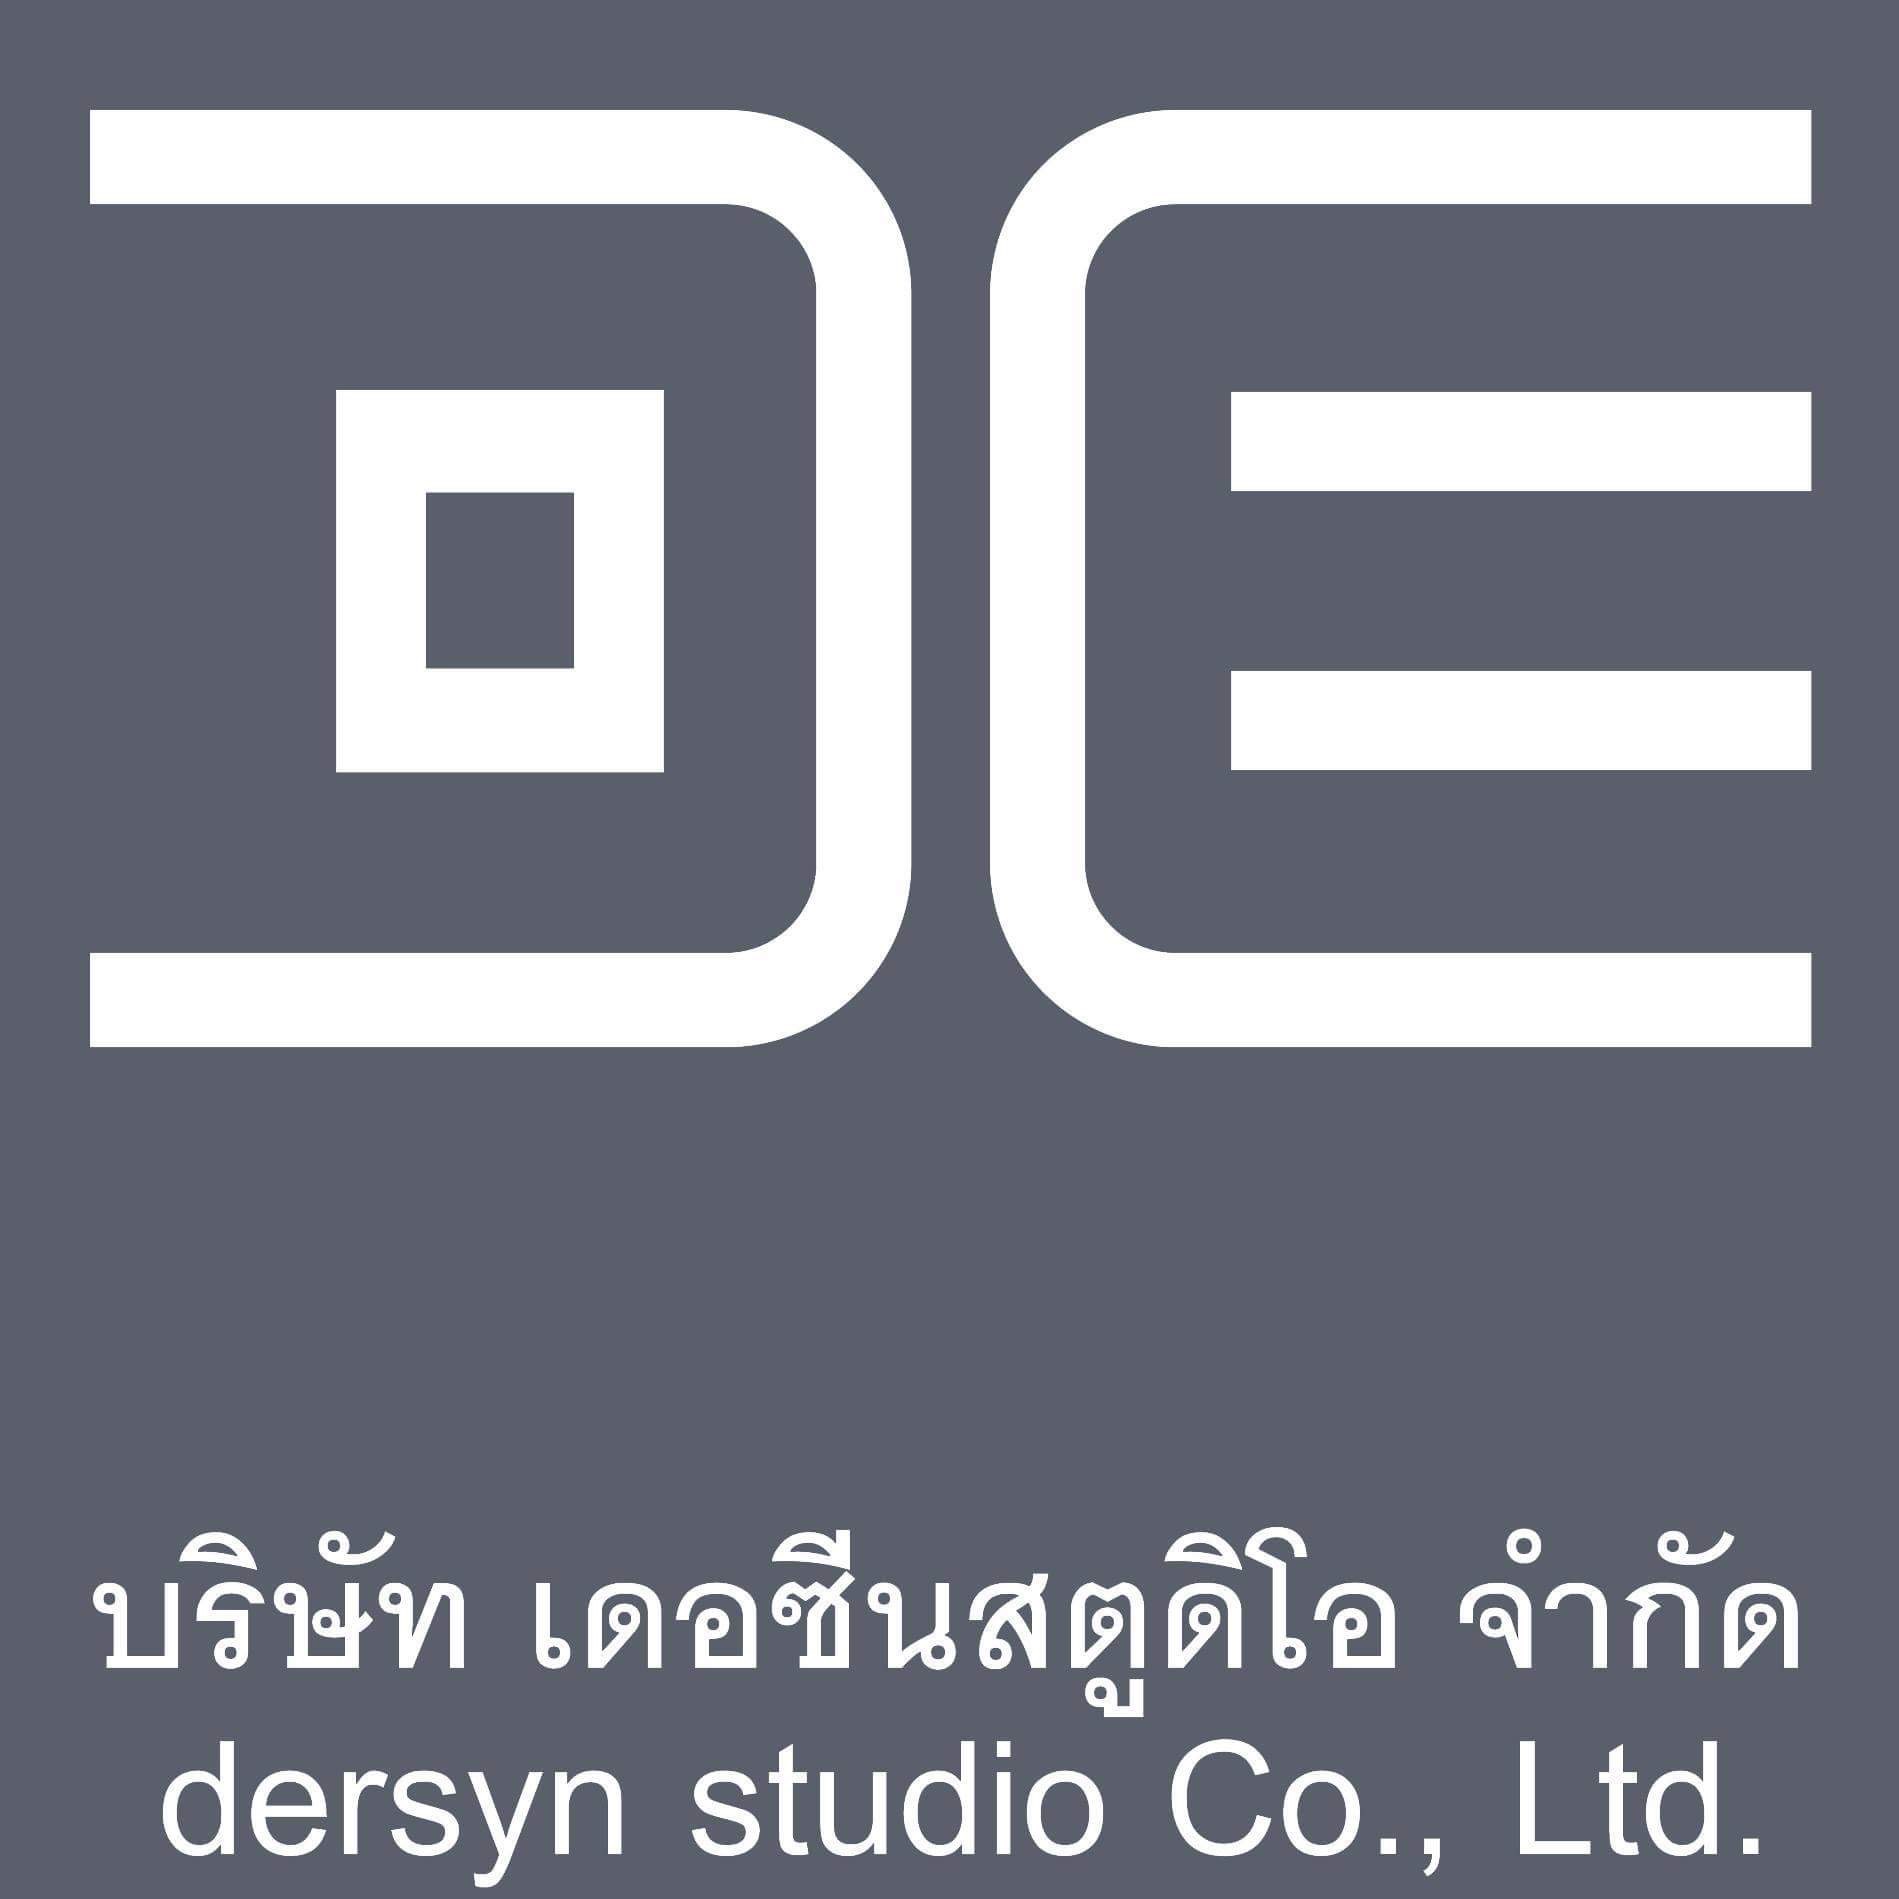 Dersyn Studio